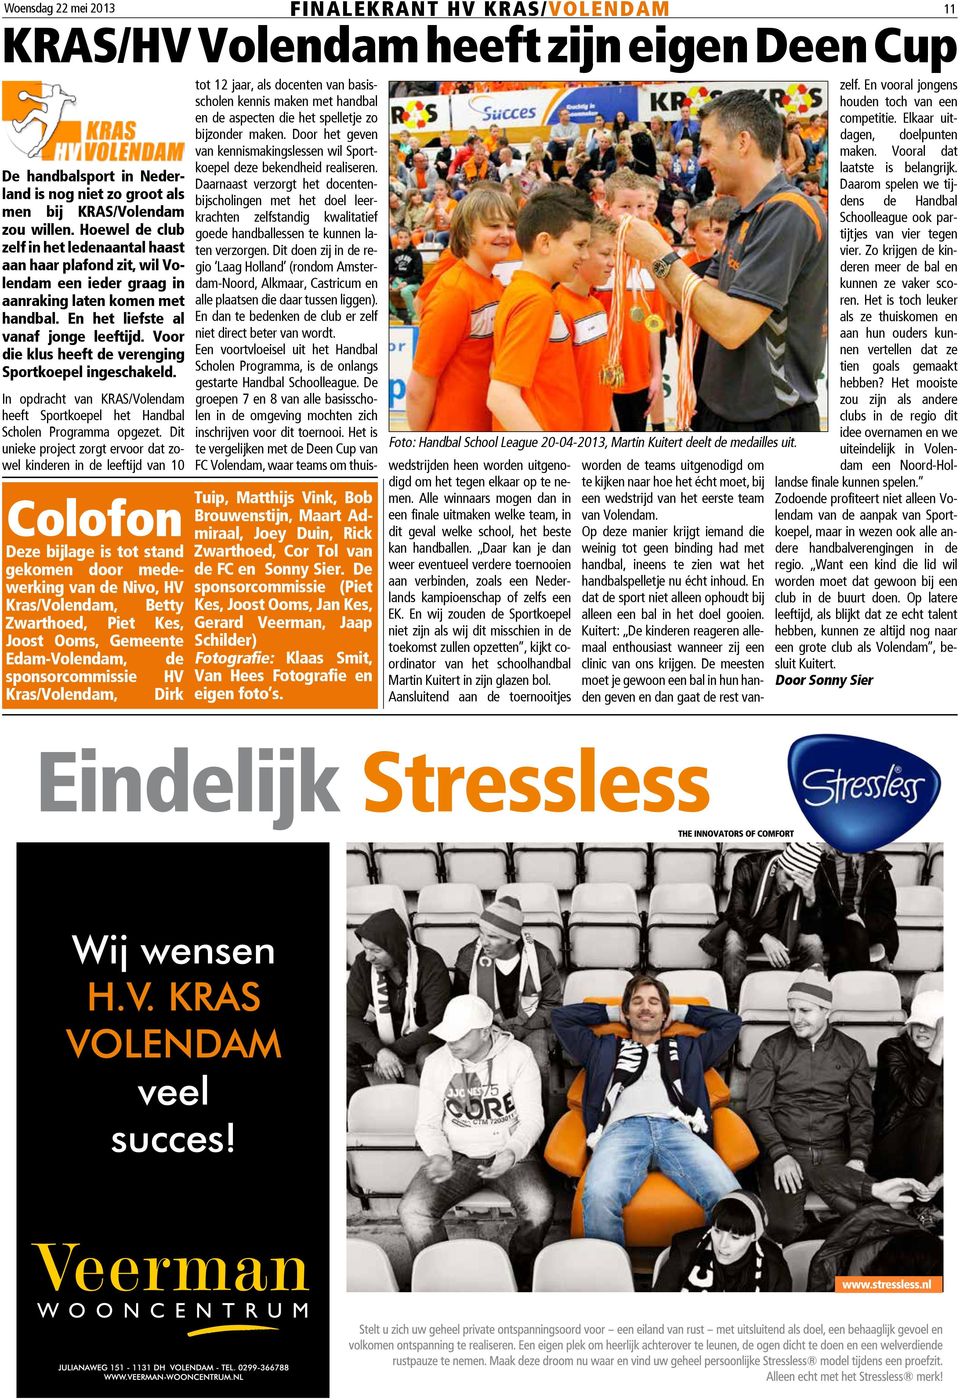 Voor die klus heeft de verenging Sportkoepel ingeschakeld. In opdracht van KRAS/Volendam heeft Sportkoepel het Handbal Scholen Programma opgezet.